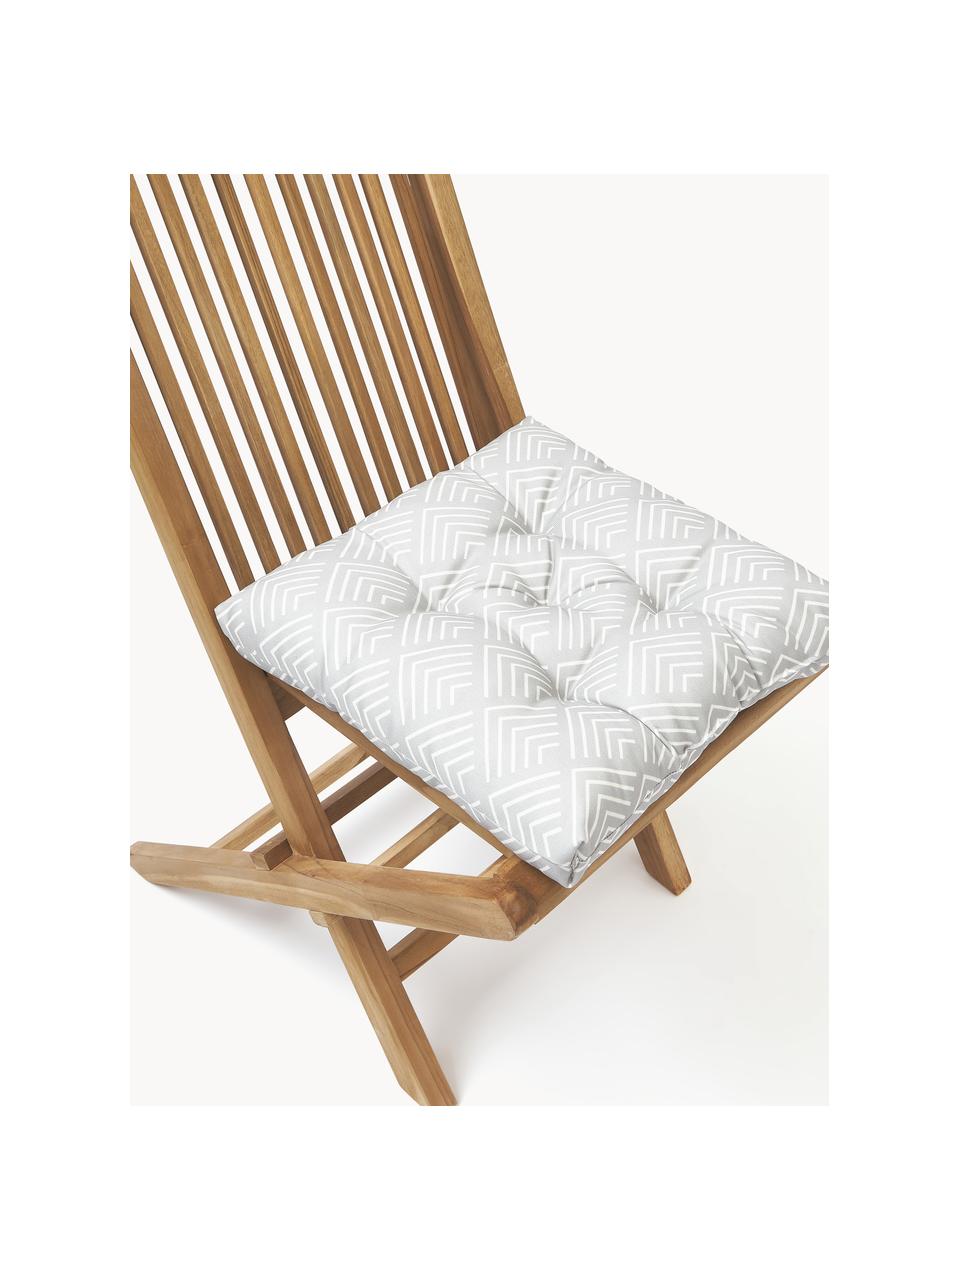 Coussin de chaise avec motif graphique Milano, Gris clair, blanc, larg. 40 x long. 40 cm